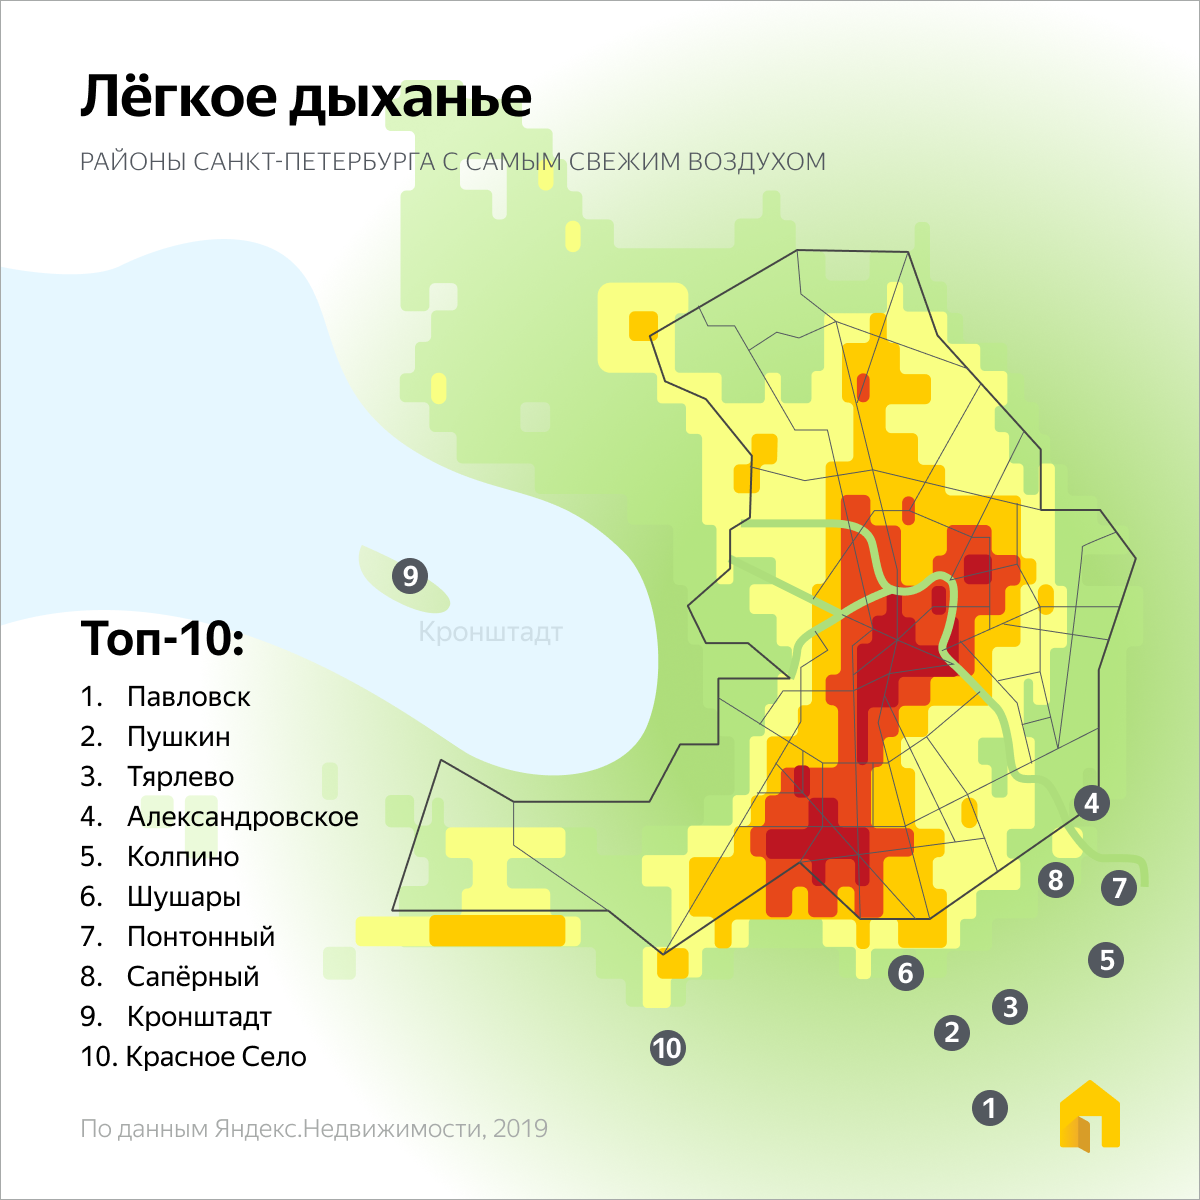 12 самых грязных городов россии - рейтинг 2021